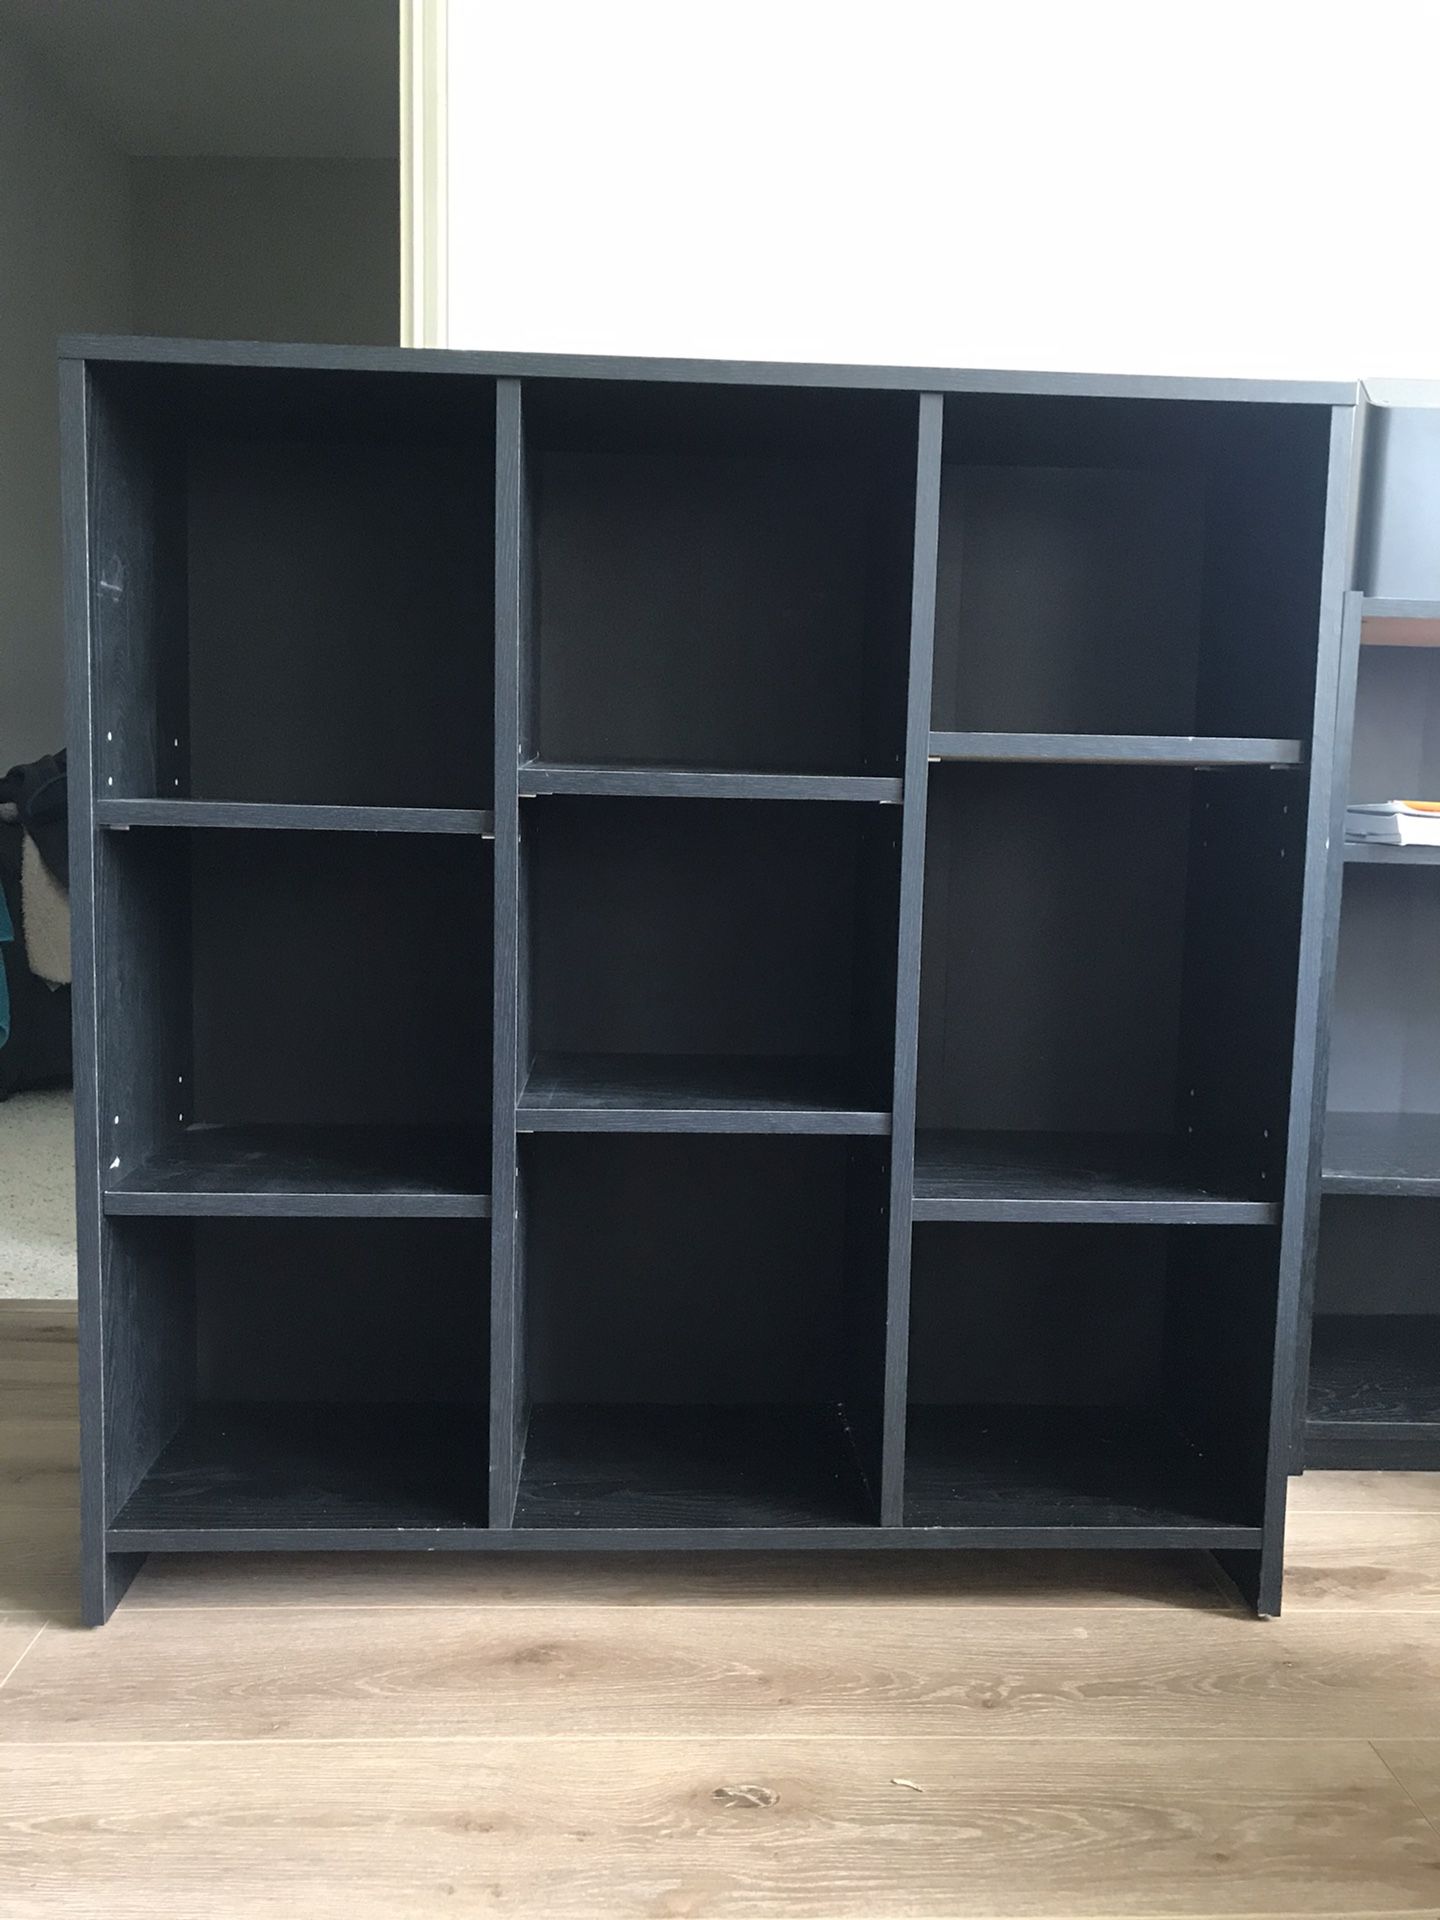 Black Wooden Shelf With Adjustable Shelves